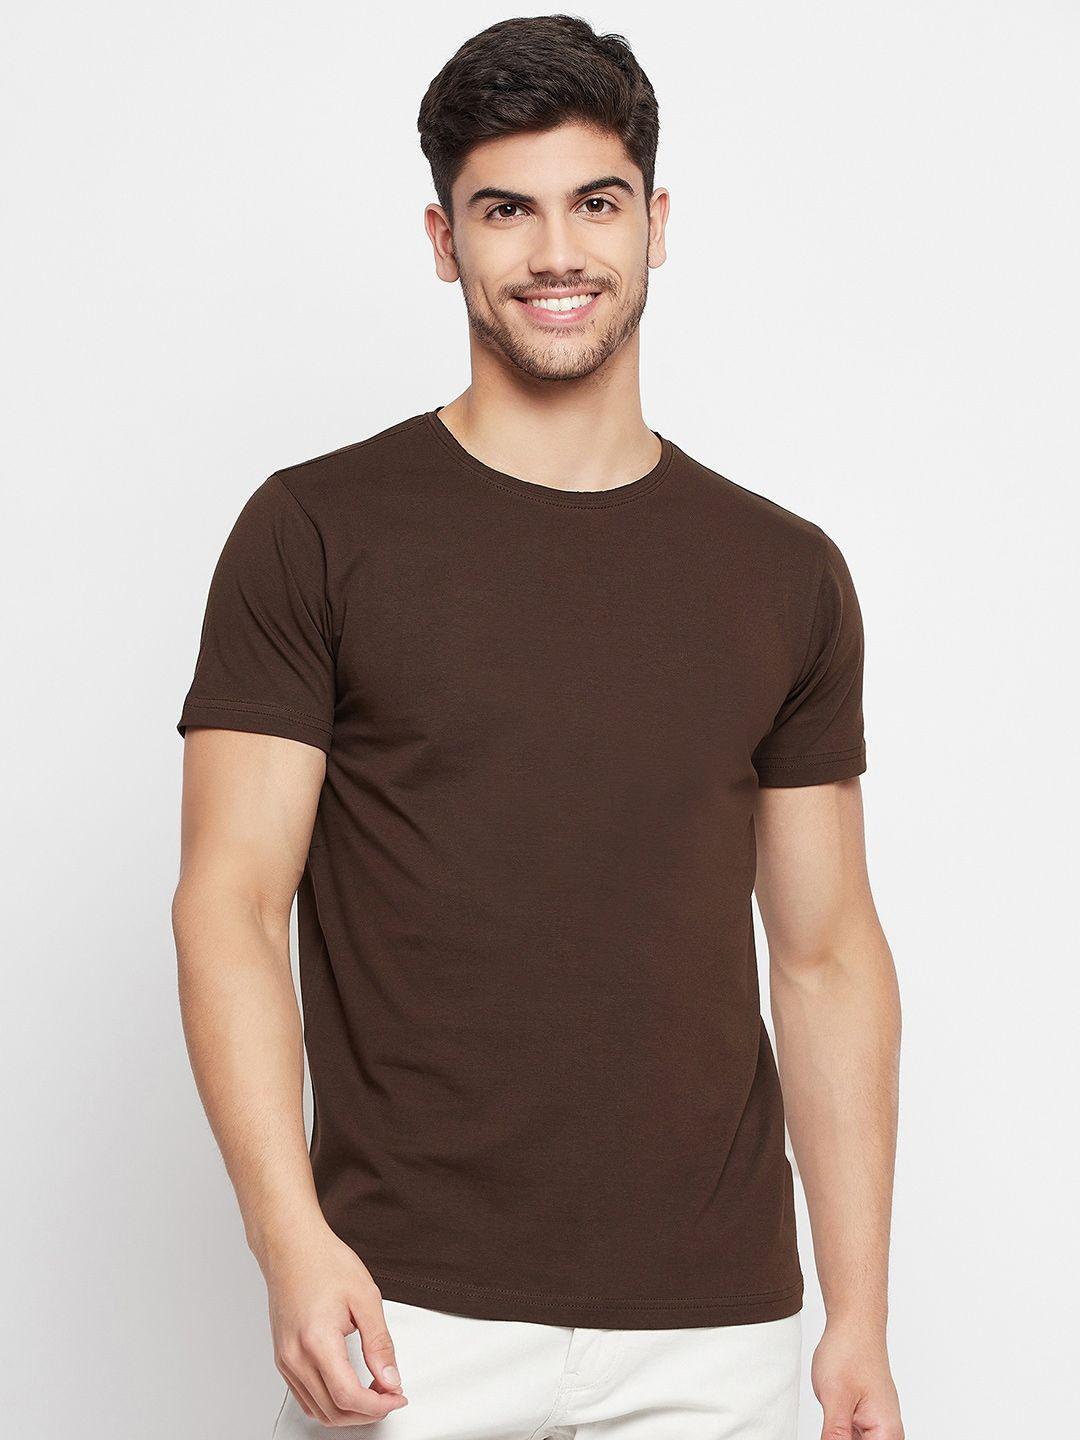 qubic-round-neck-cotton-t-shirt